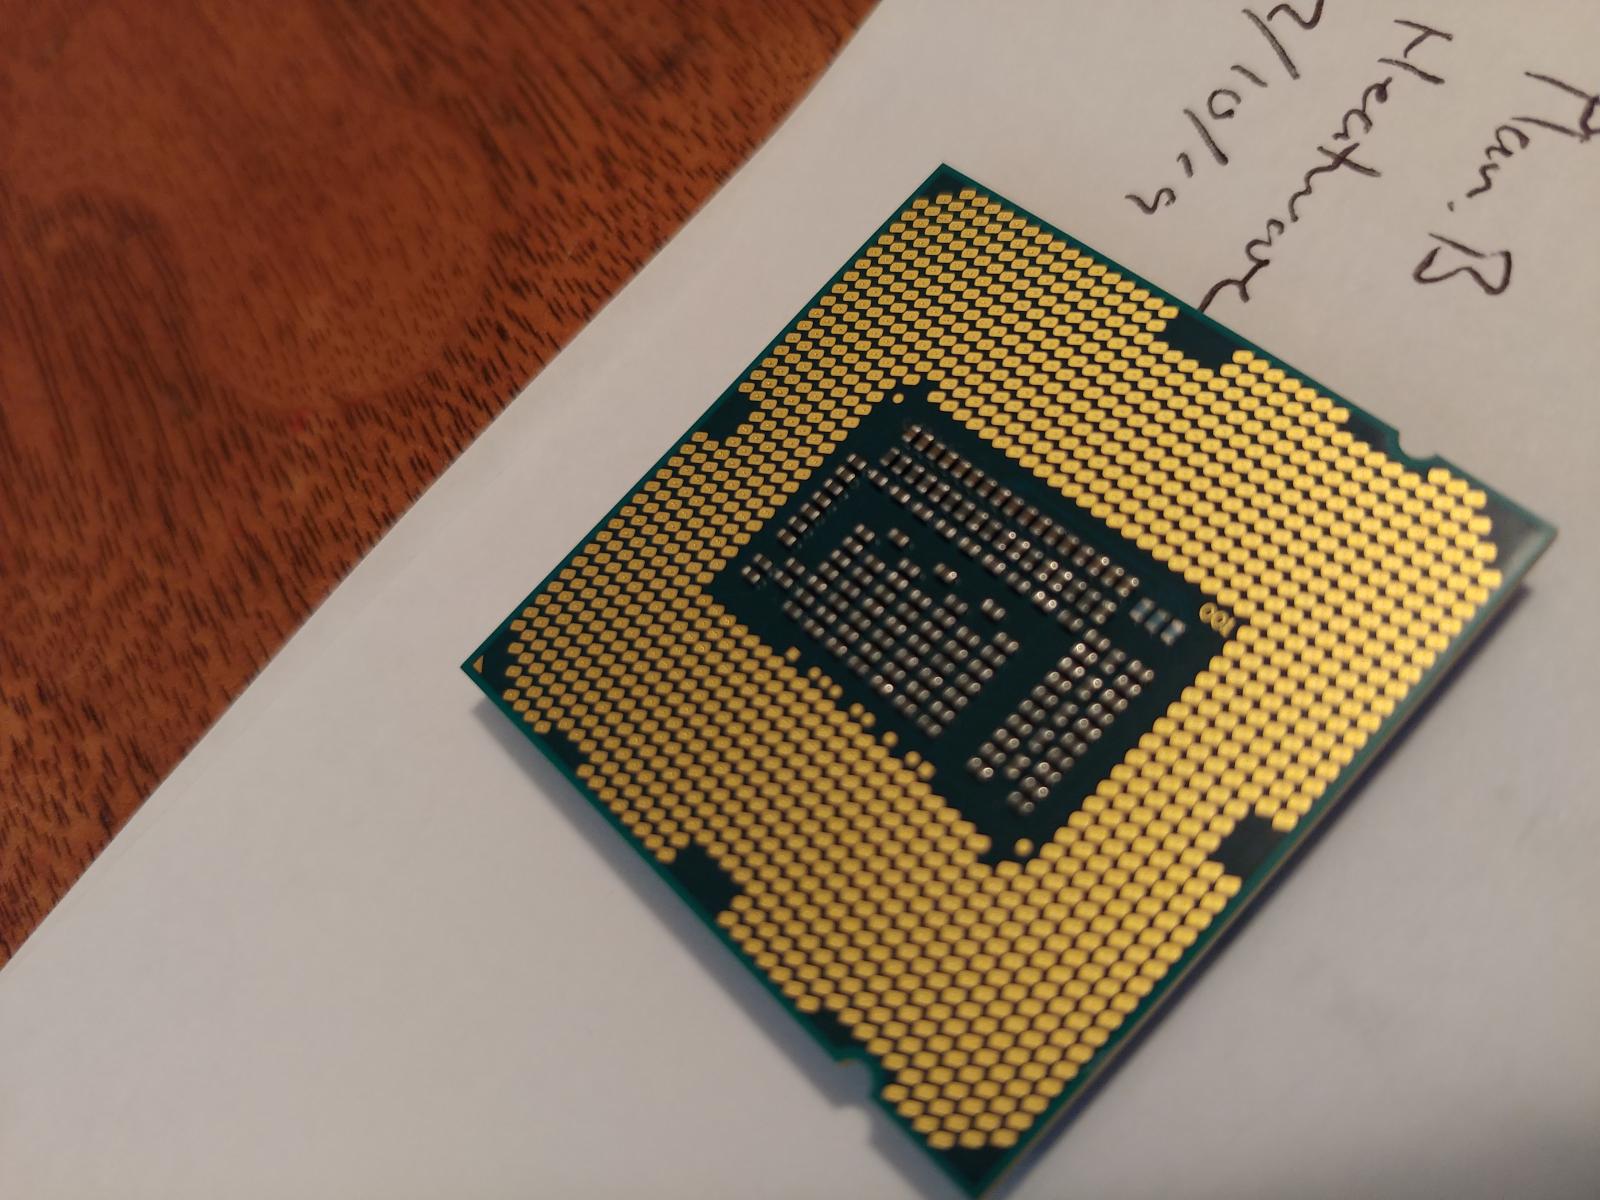 For sale Intel i5 3570k